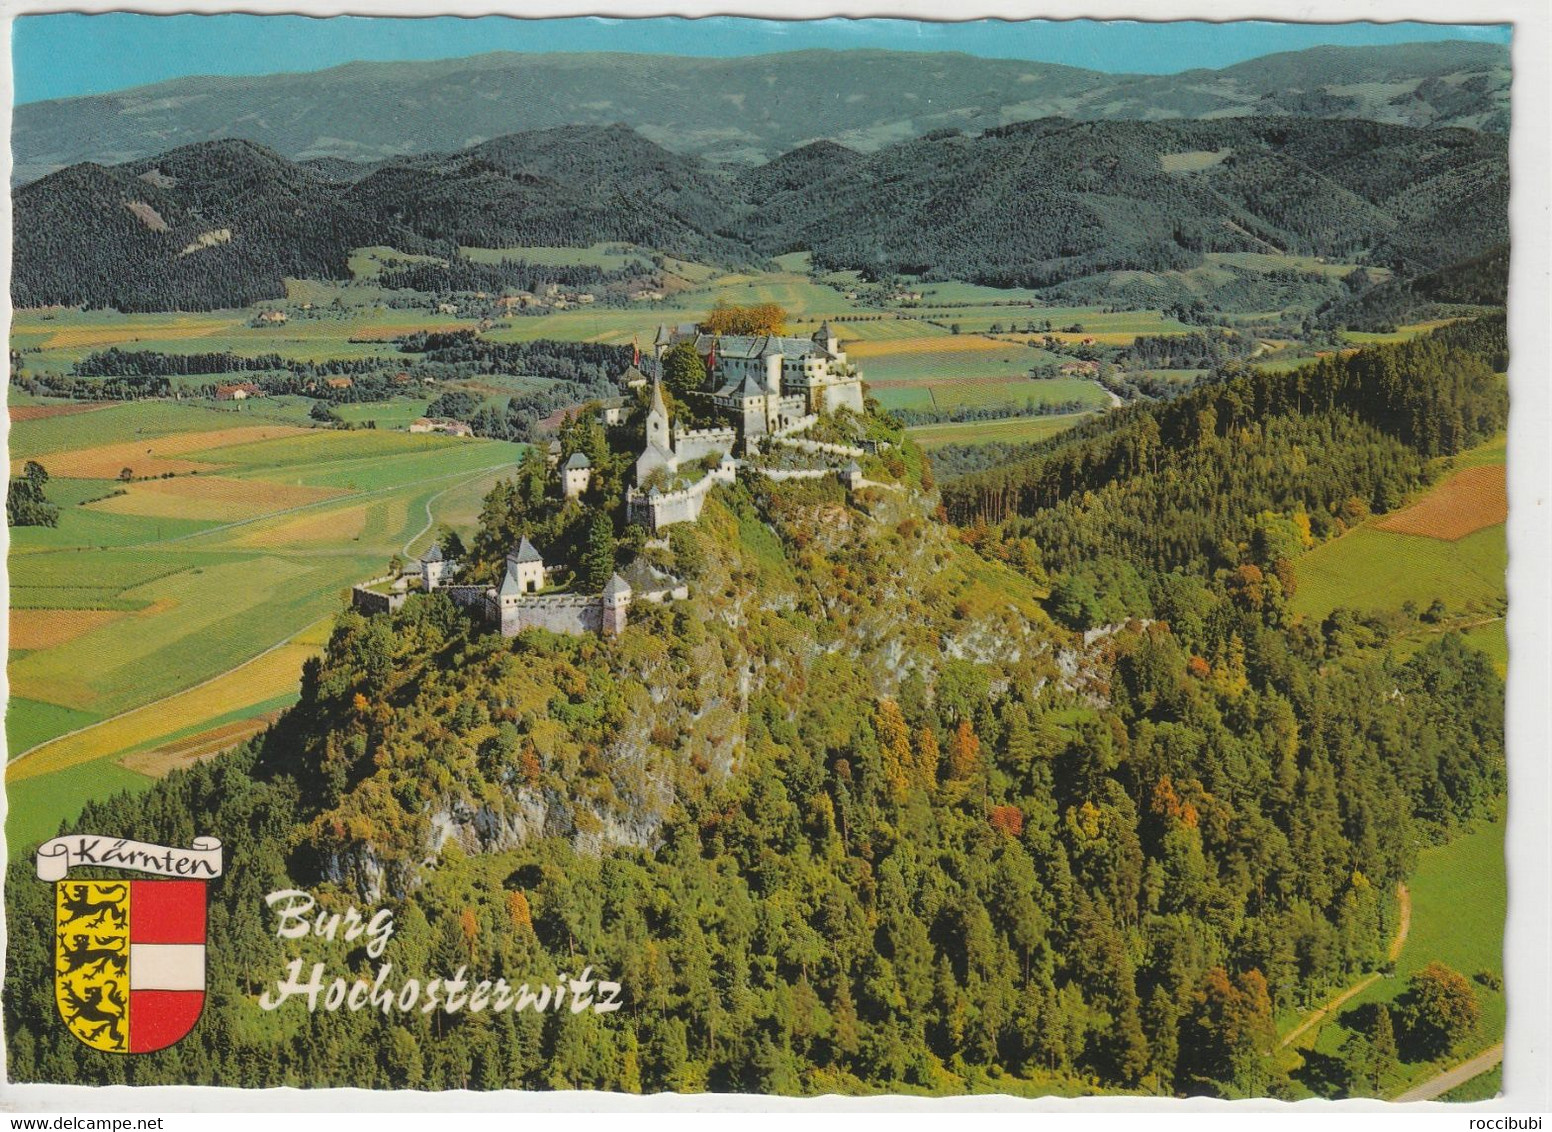 Burg Hochosterwitz, Kärnten, Austria - St. Veit An Der Glan